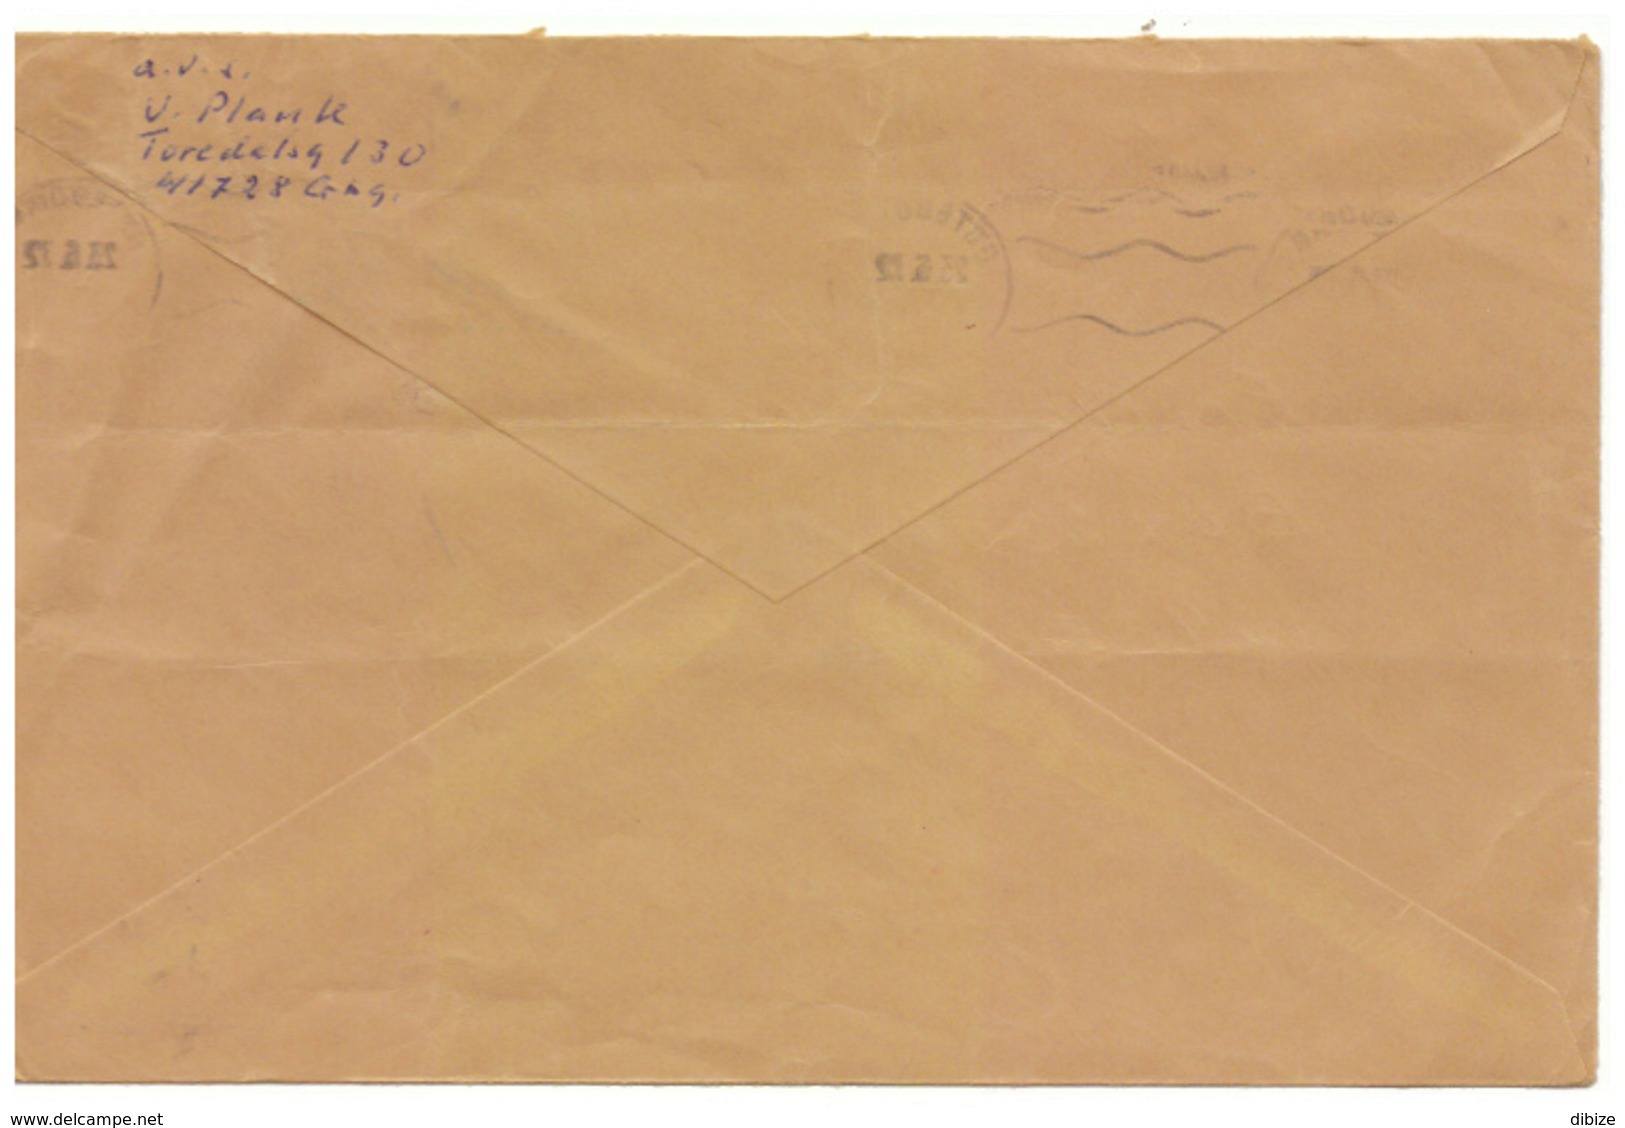 Sweden. Letter. Stamps And Postmark. 1972. Goteborg - 1930- ... Francobolli In Bobina II